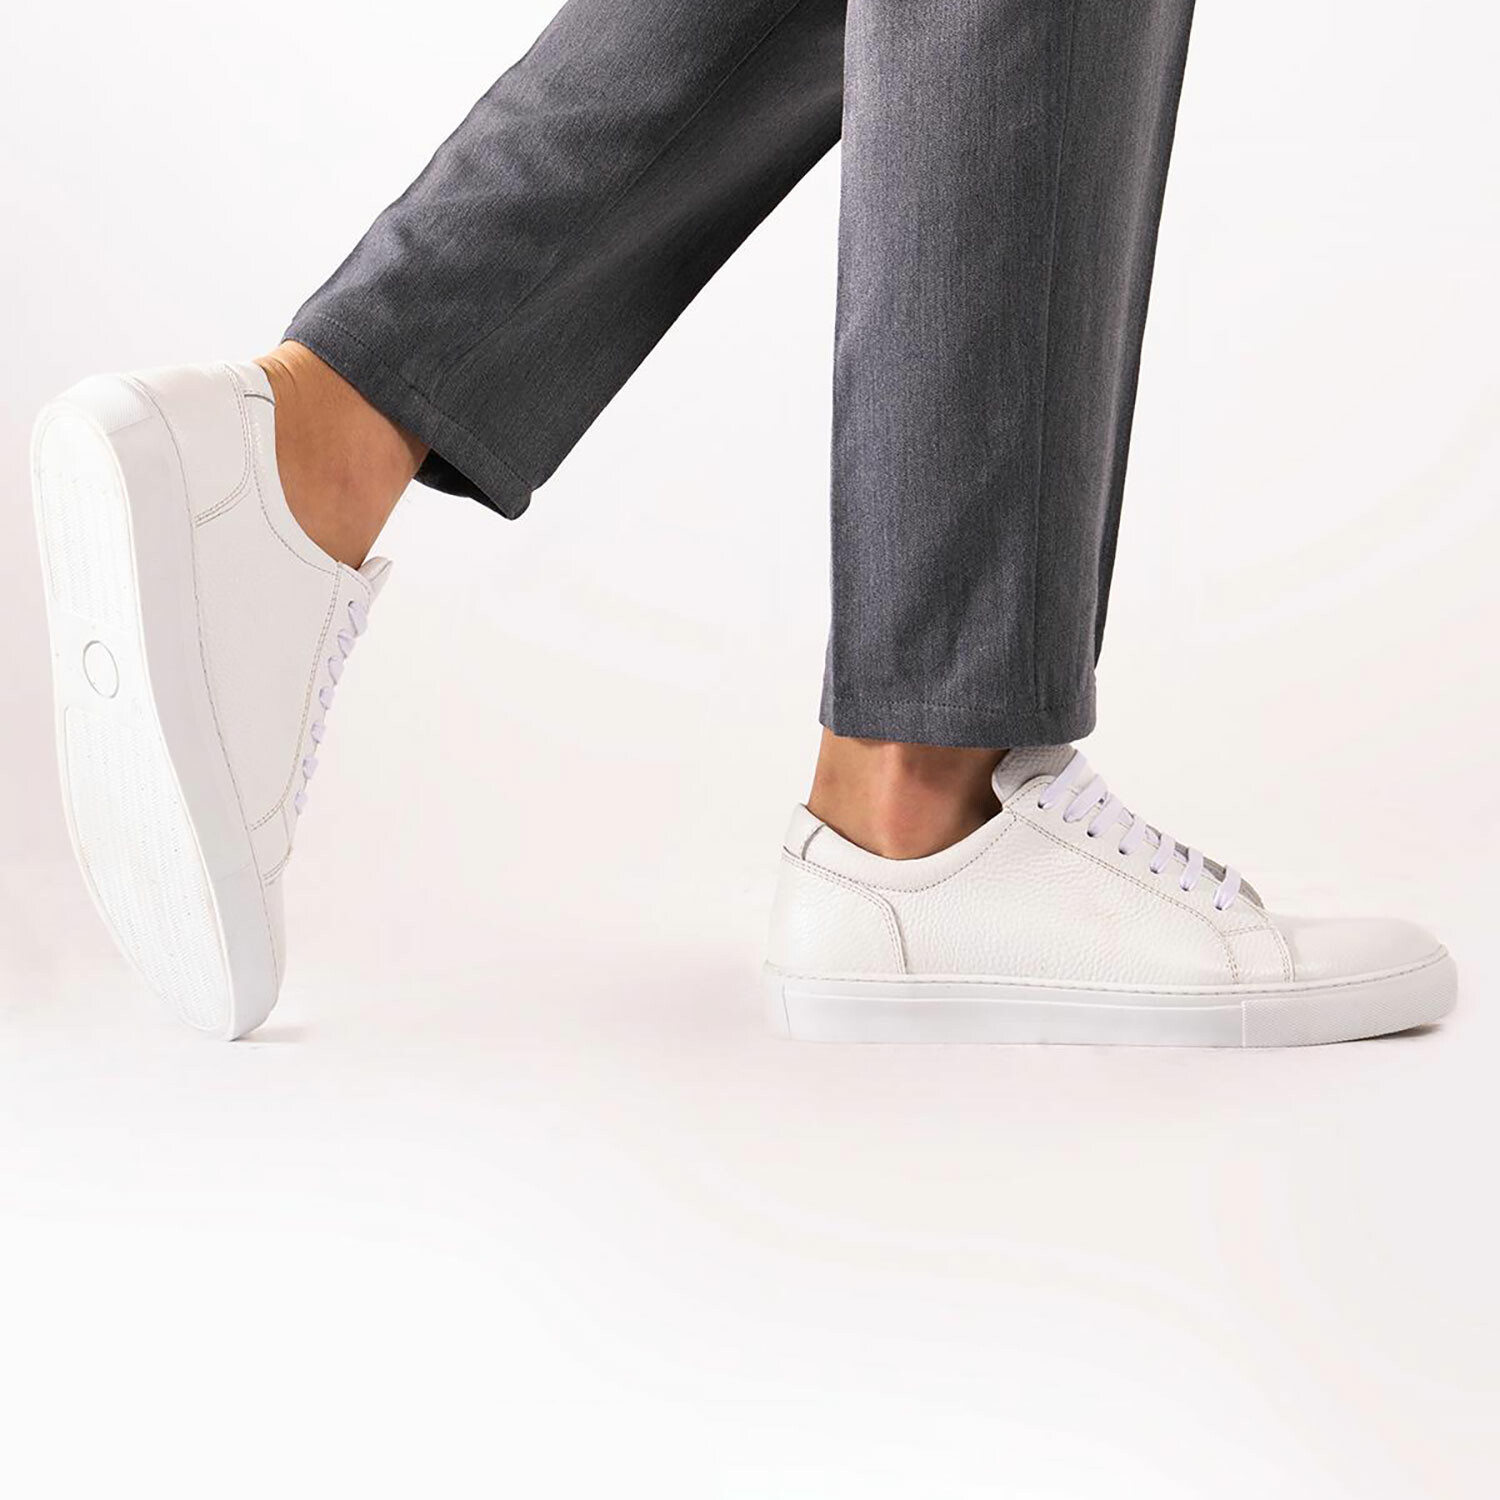 Phillip Sneaker // White (Euro Size 40) - Inci Global PERMANENT STORE ...